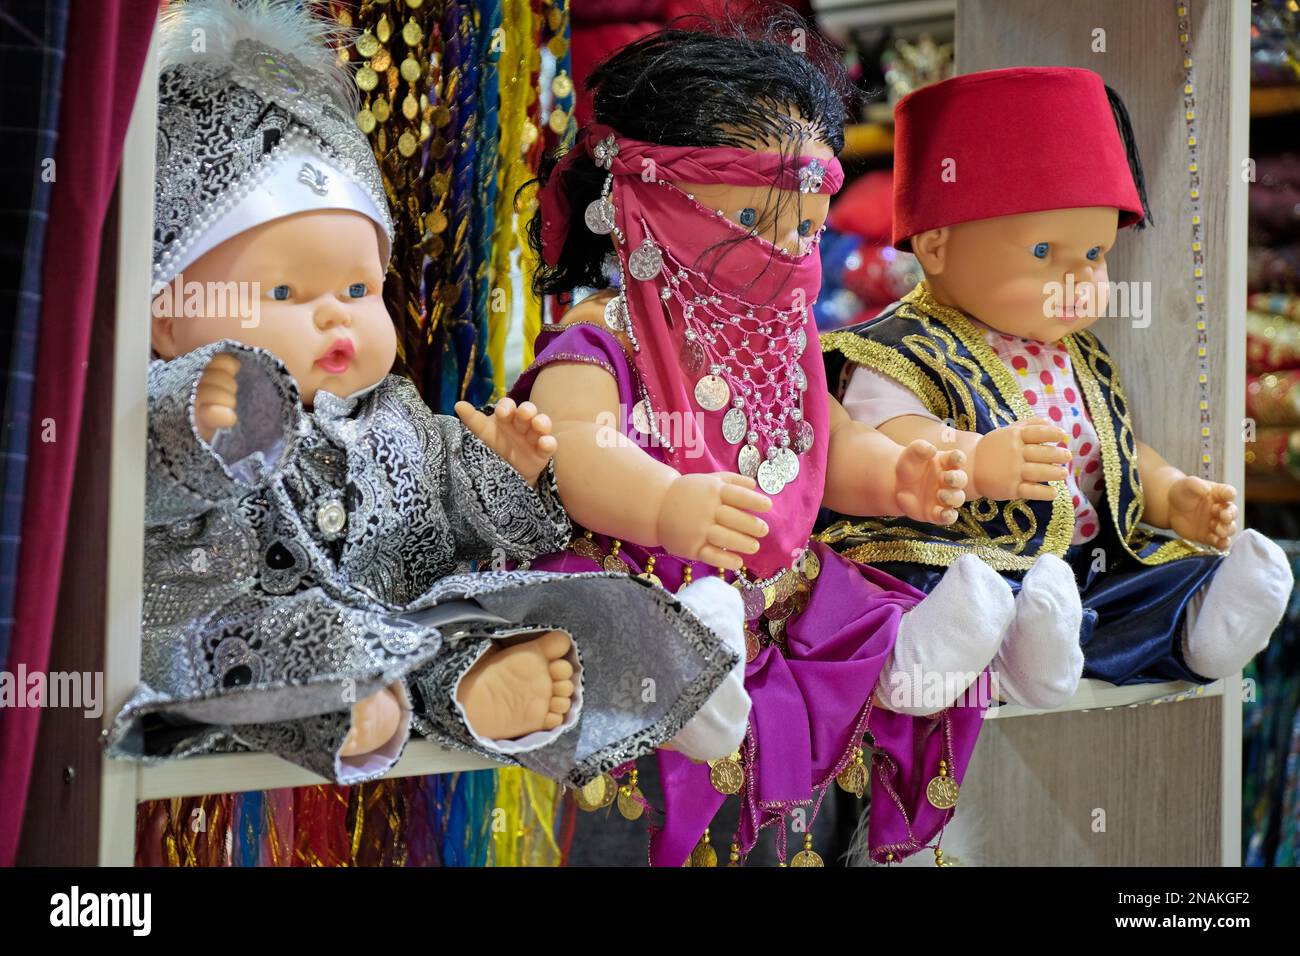 ISTANBUL, Turchia - 25 maggio : bambole in vendita nel Grand Bazaar a Istanbul Turchia il 25 maggio 2018 Foto Stock